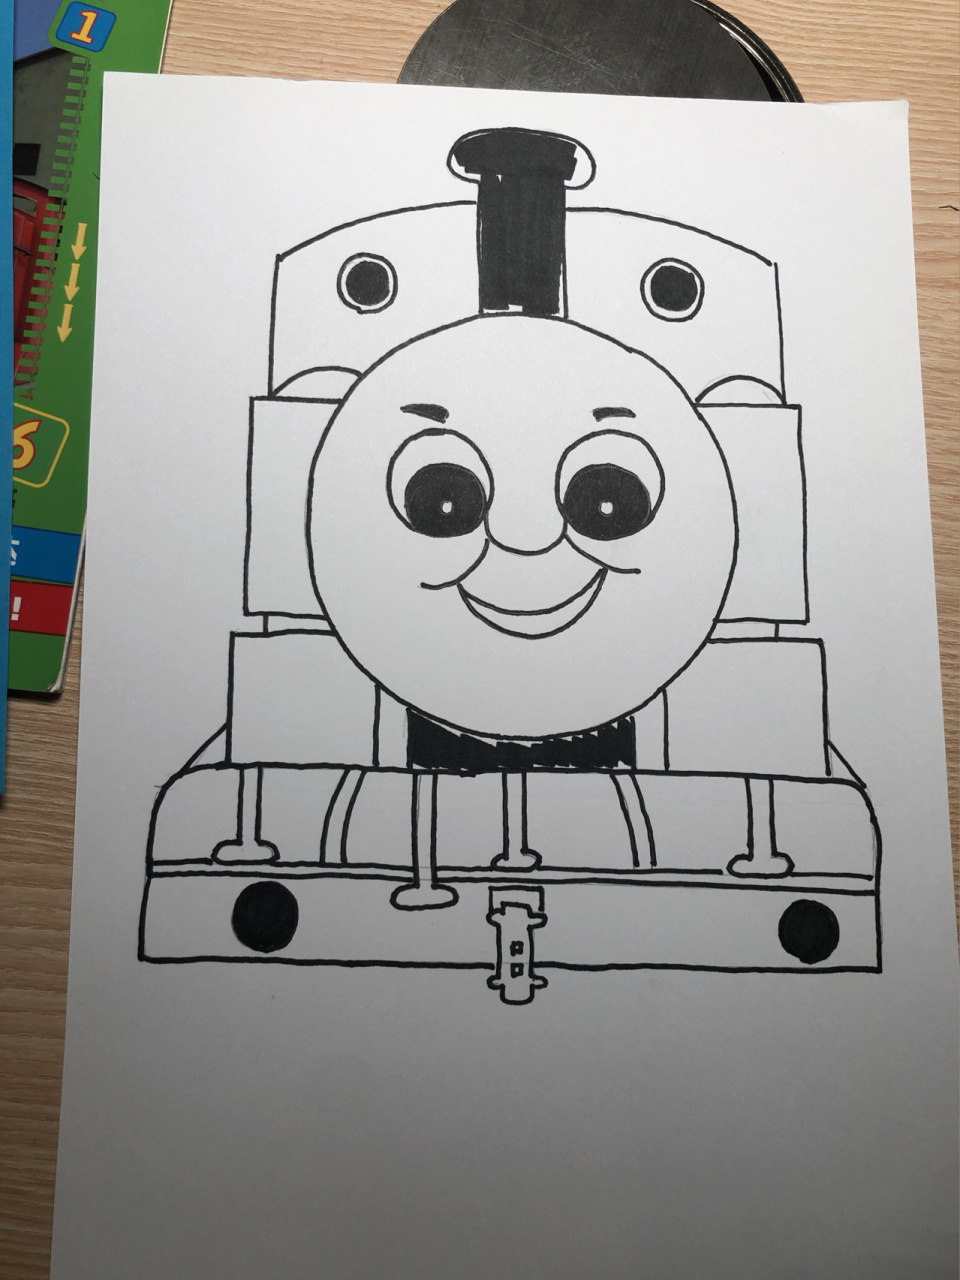 小朋友们都爱的托马斯小火车简笔画 幼儿园要求推荐情绪类绘本 然后要